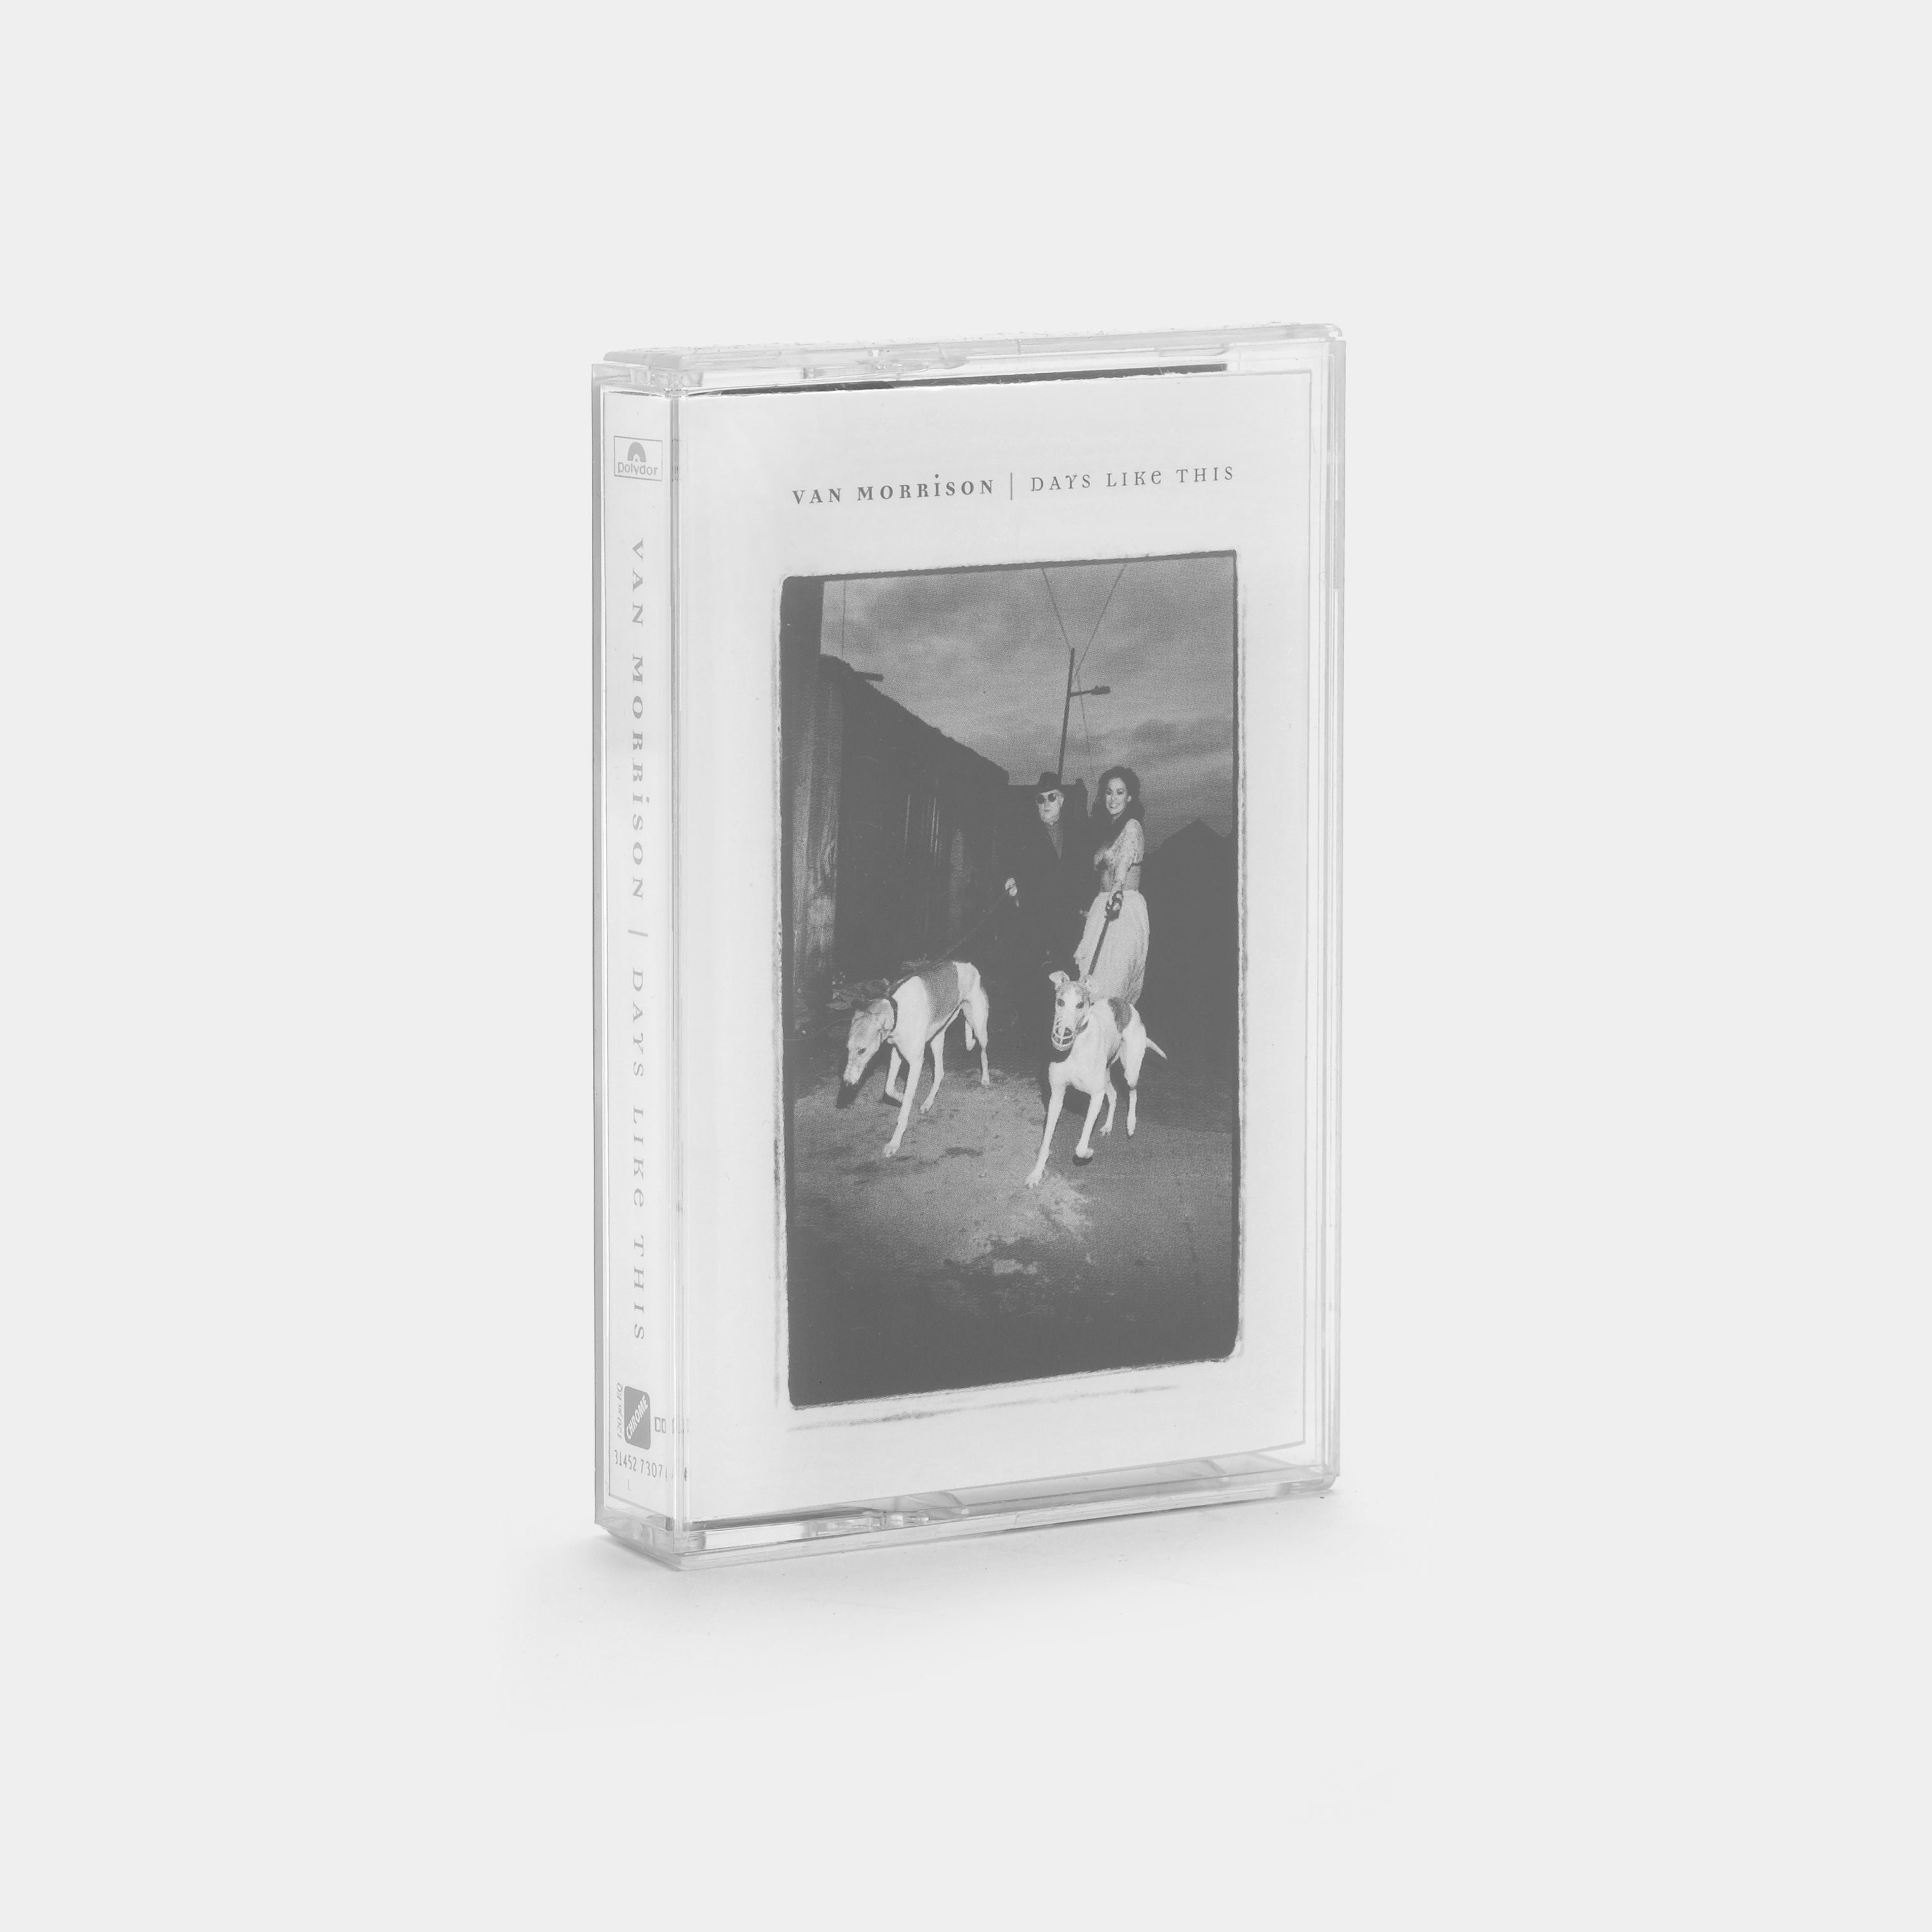 Van Morrison - Days Like This Cassette Tape